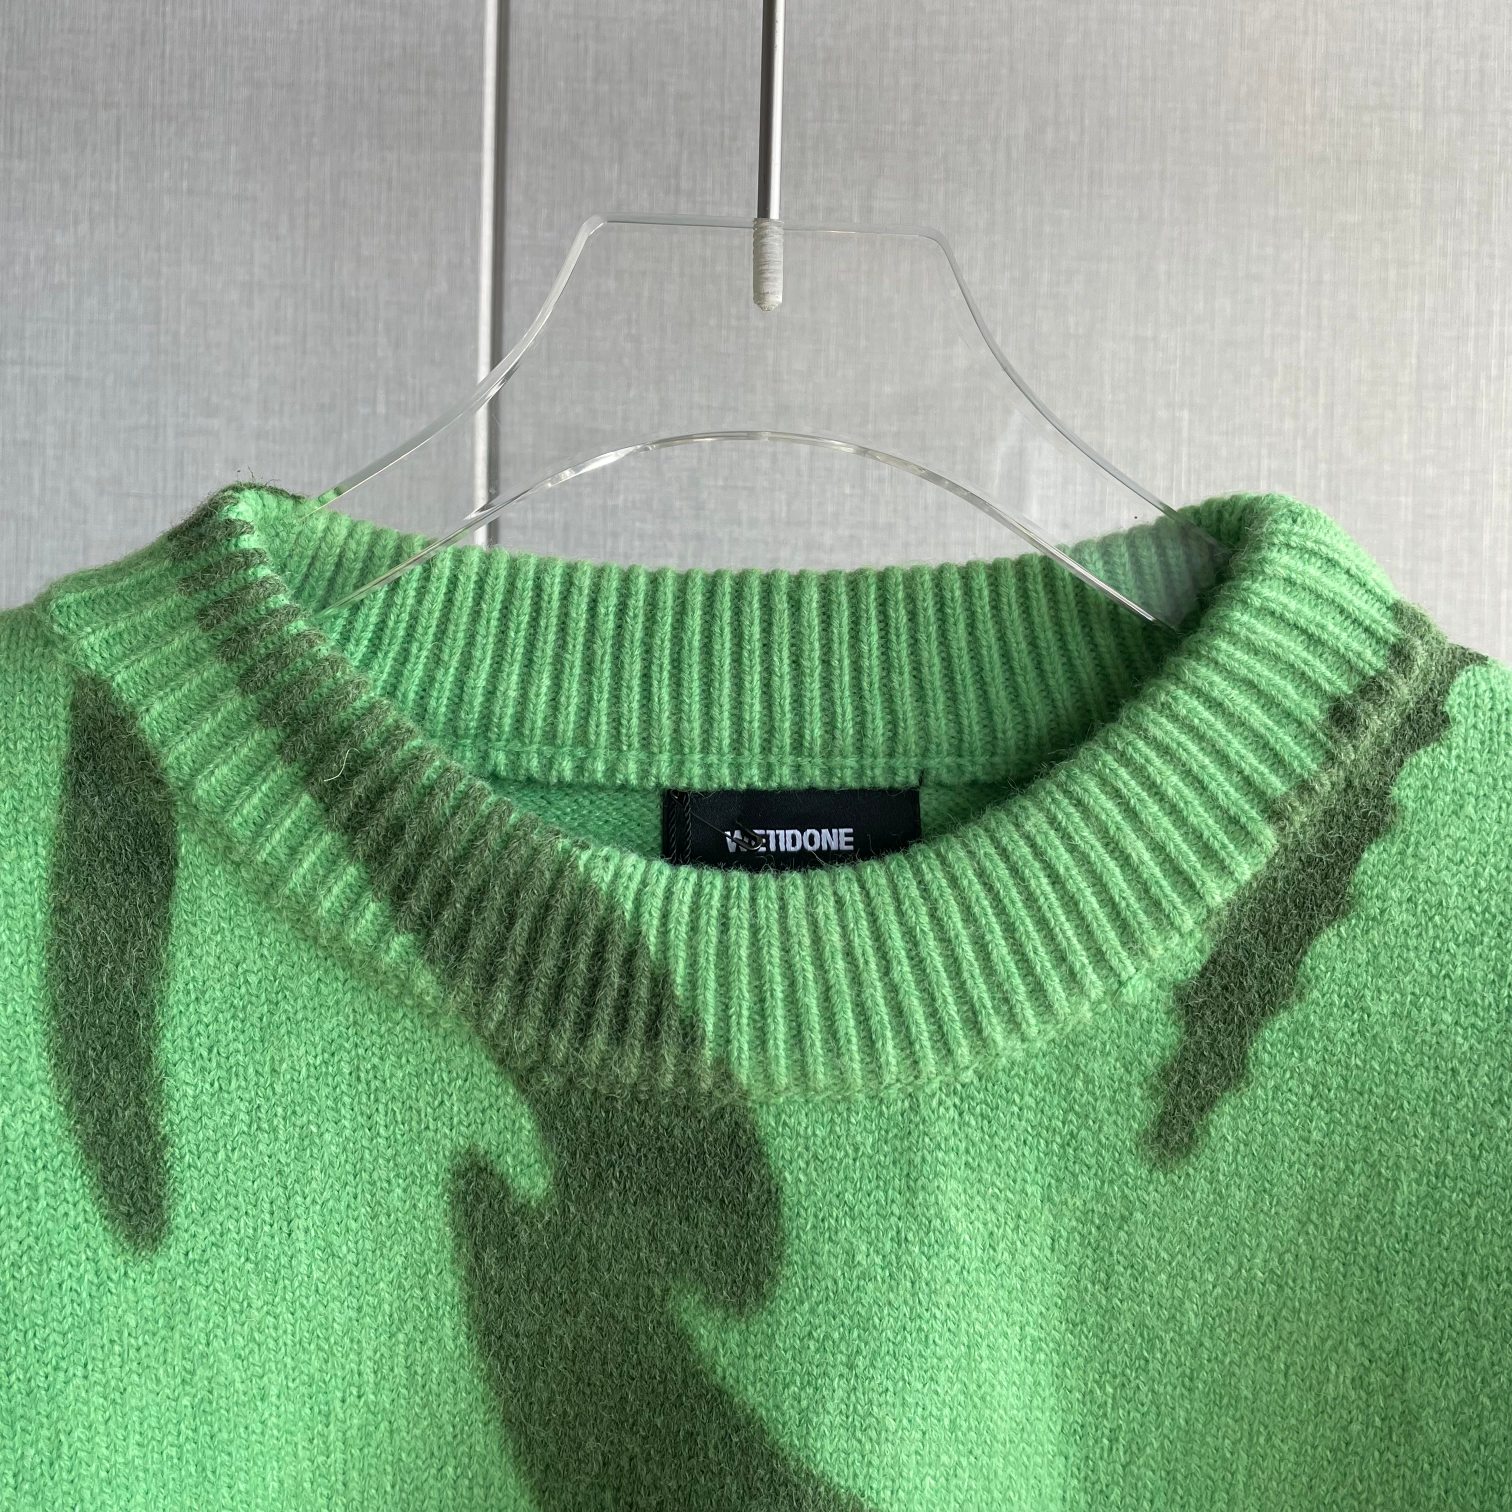 WE11DONE アウターウェアコピー 暖かい セーター ニット トップス ファッション グリーン_3